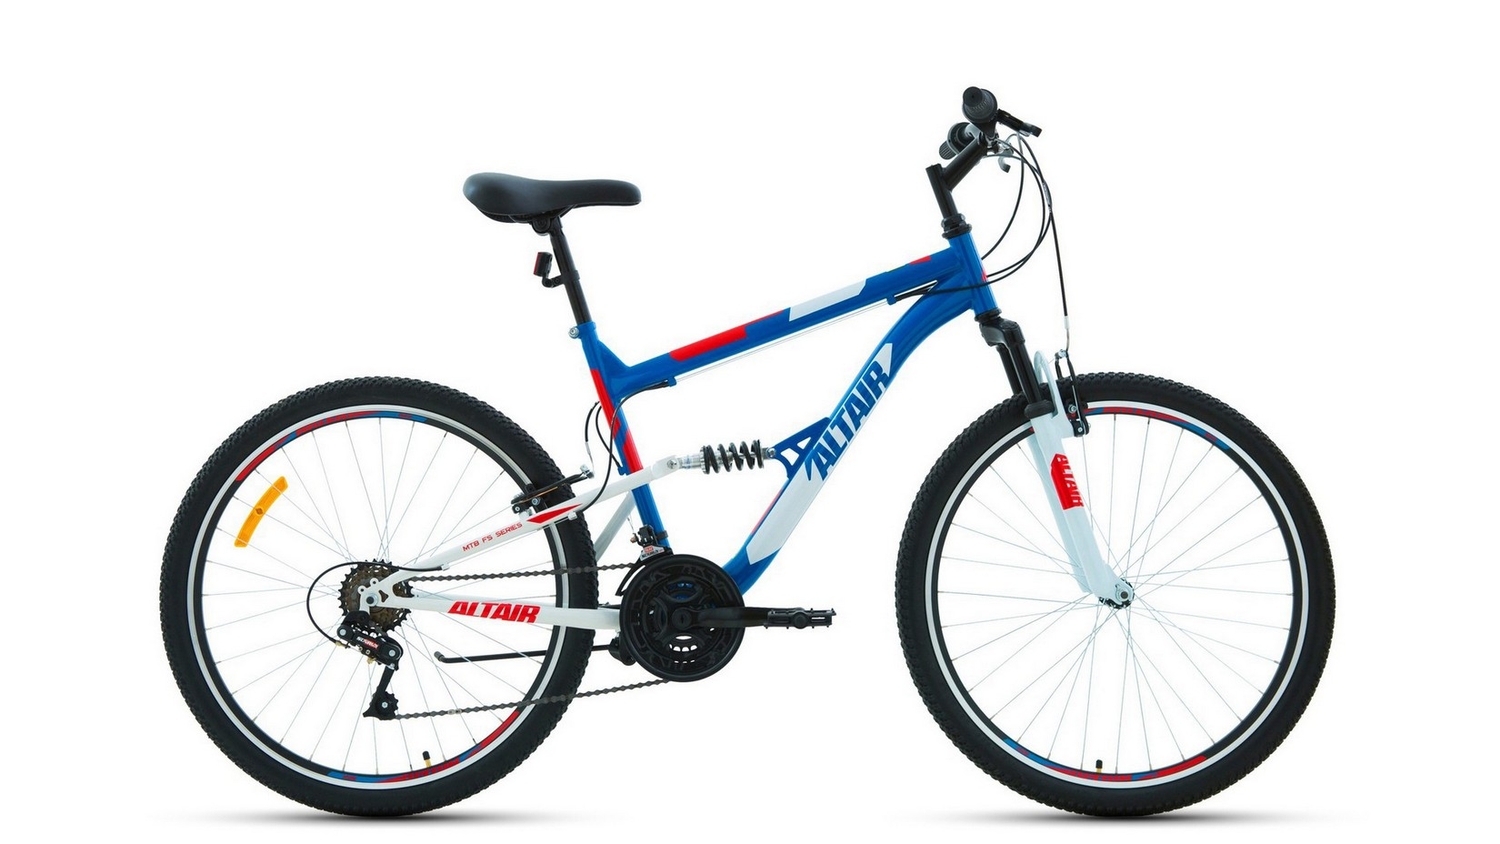 Велосипеды Двухподвесы Altair MTB FS 26 1.0, год 2021, цвет Синий-Красный, ростовка 18